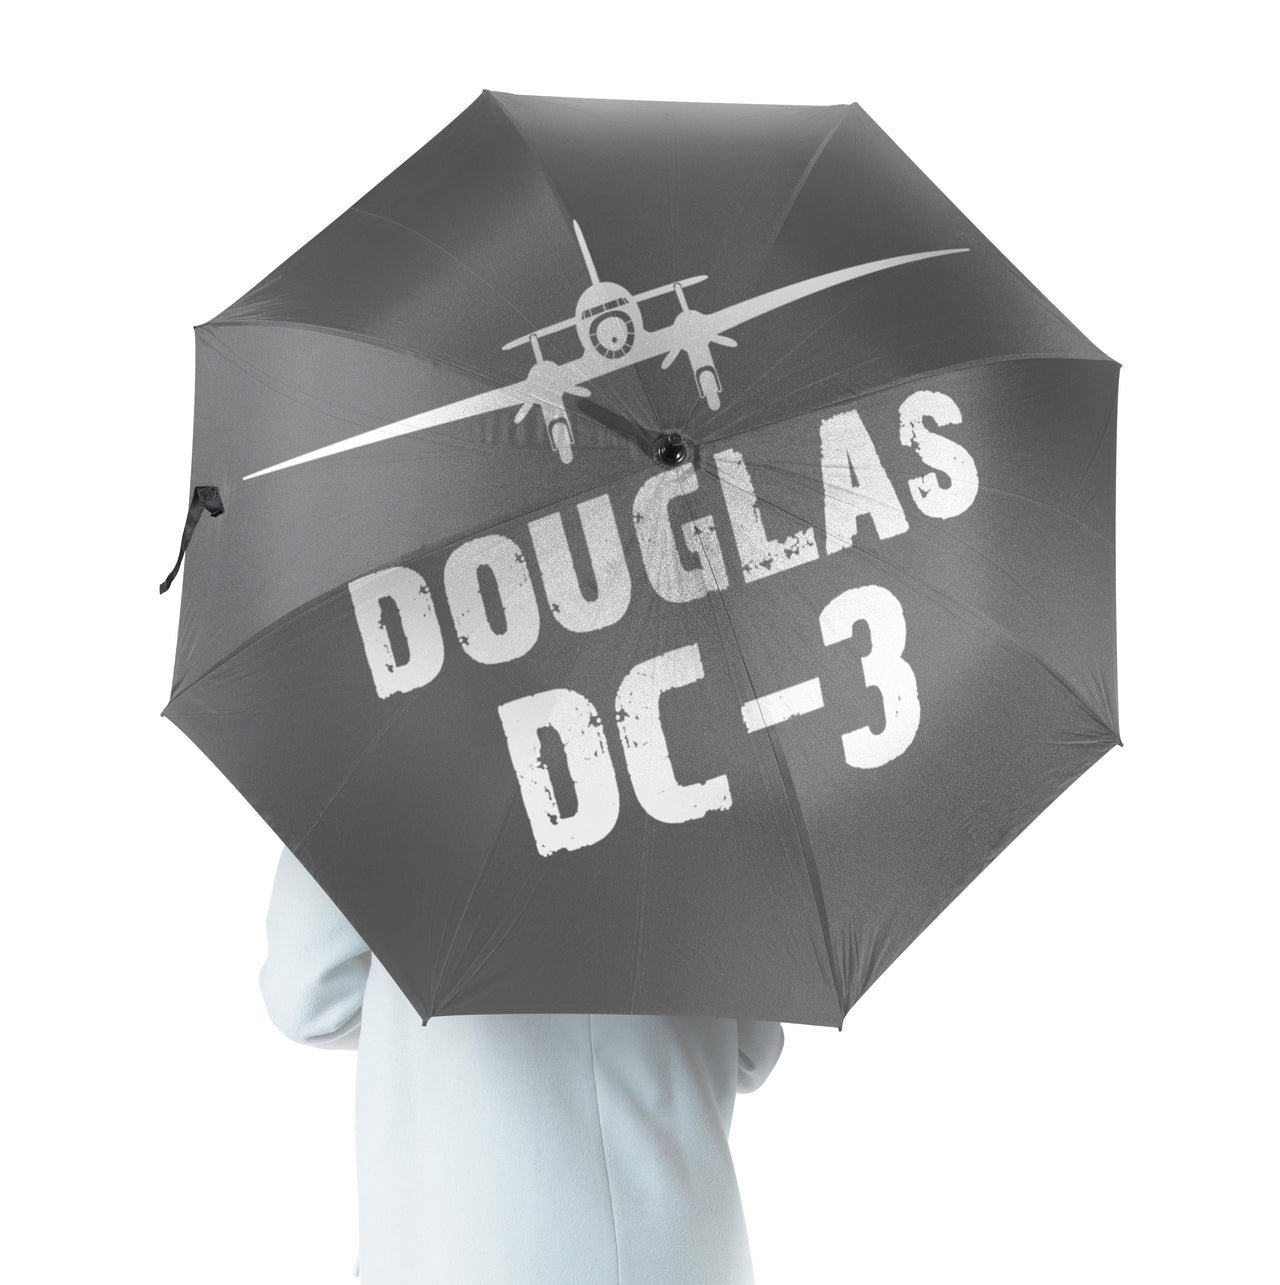 Douglas DC-3 & Plane Designed Umbrella